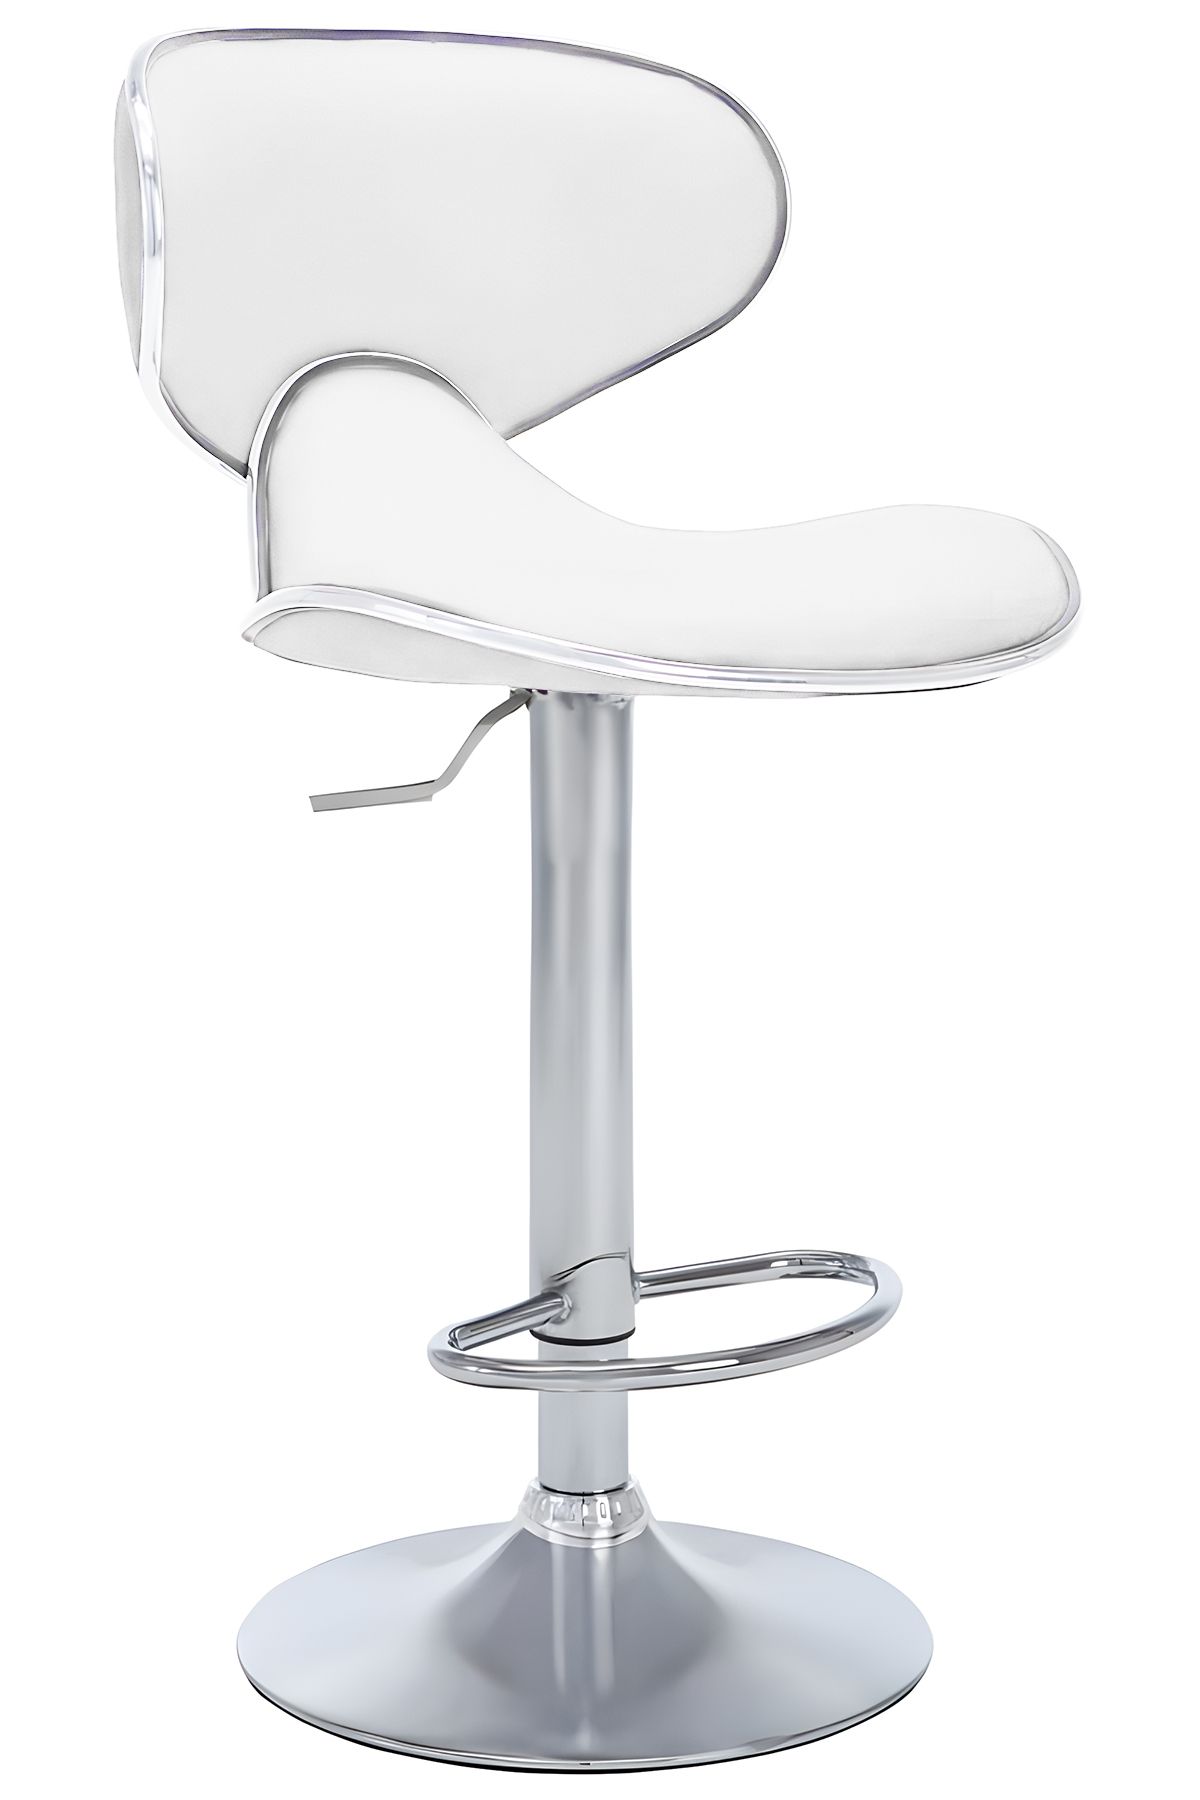 Bürocci Zen Bar Taburesi - Beyaz Modern Deri Metal Ayaklı Yüksek Tezgah Sandalyesi - 9549s0486